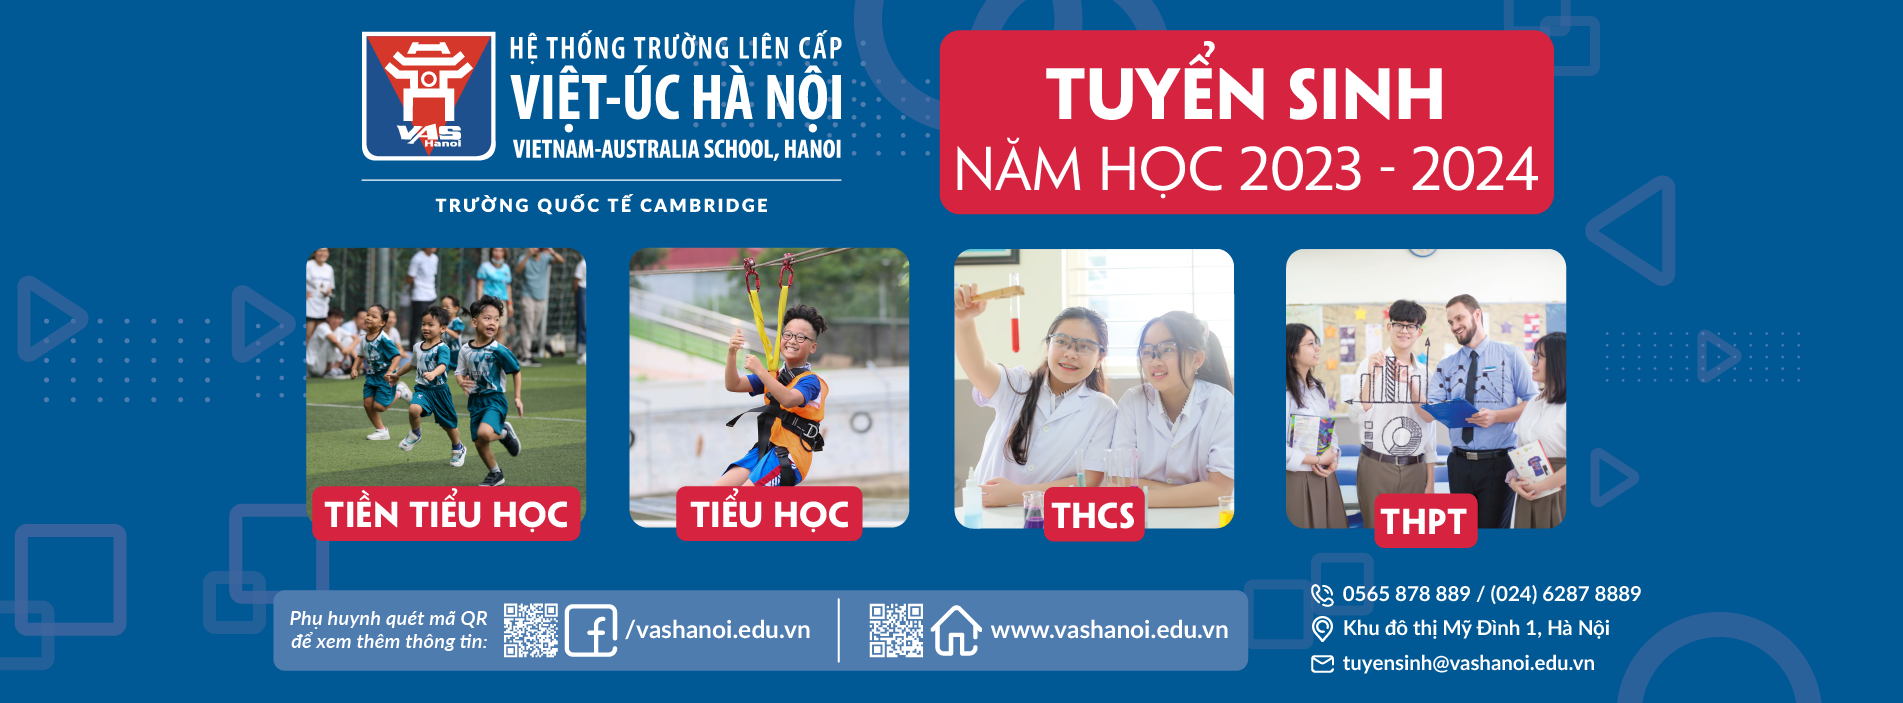 Trường Quốc tế Việt-Úc Hà Nội (Tiểu học, THCS, THPT) - VAS Hanoi